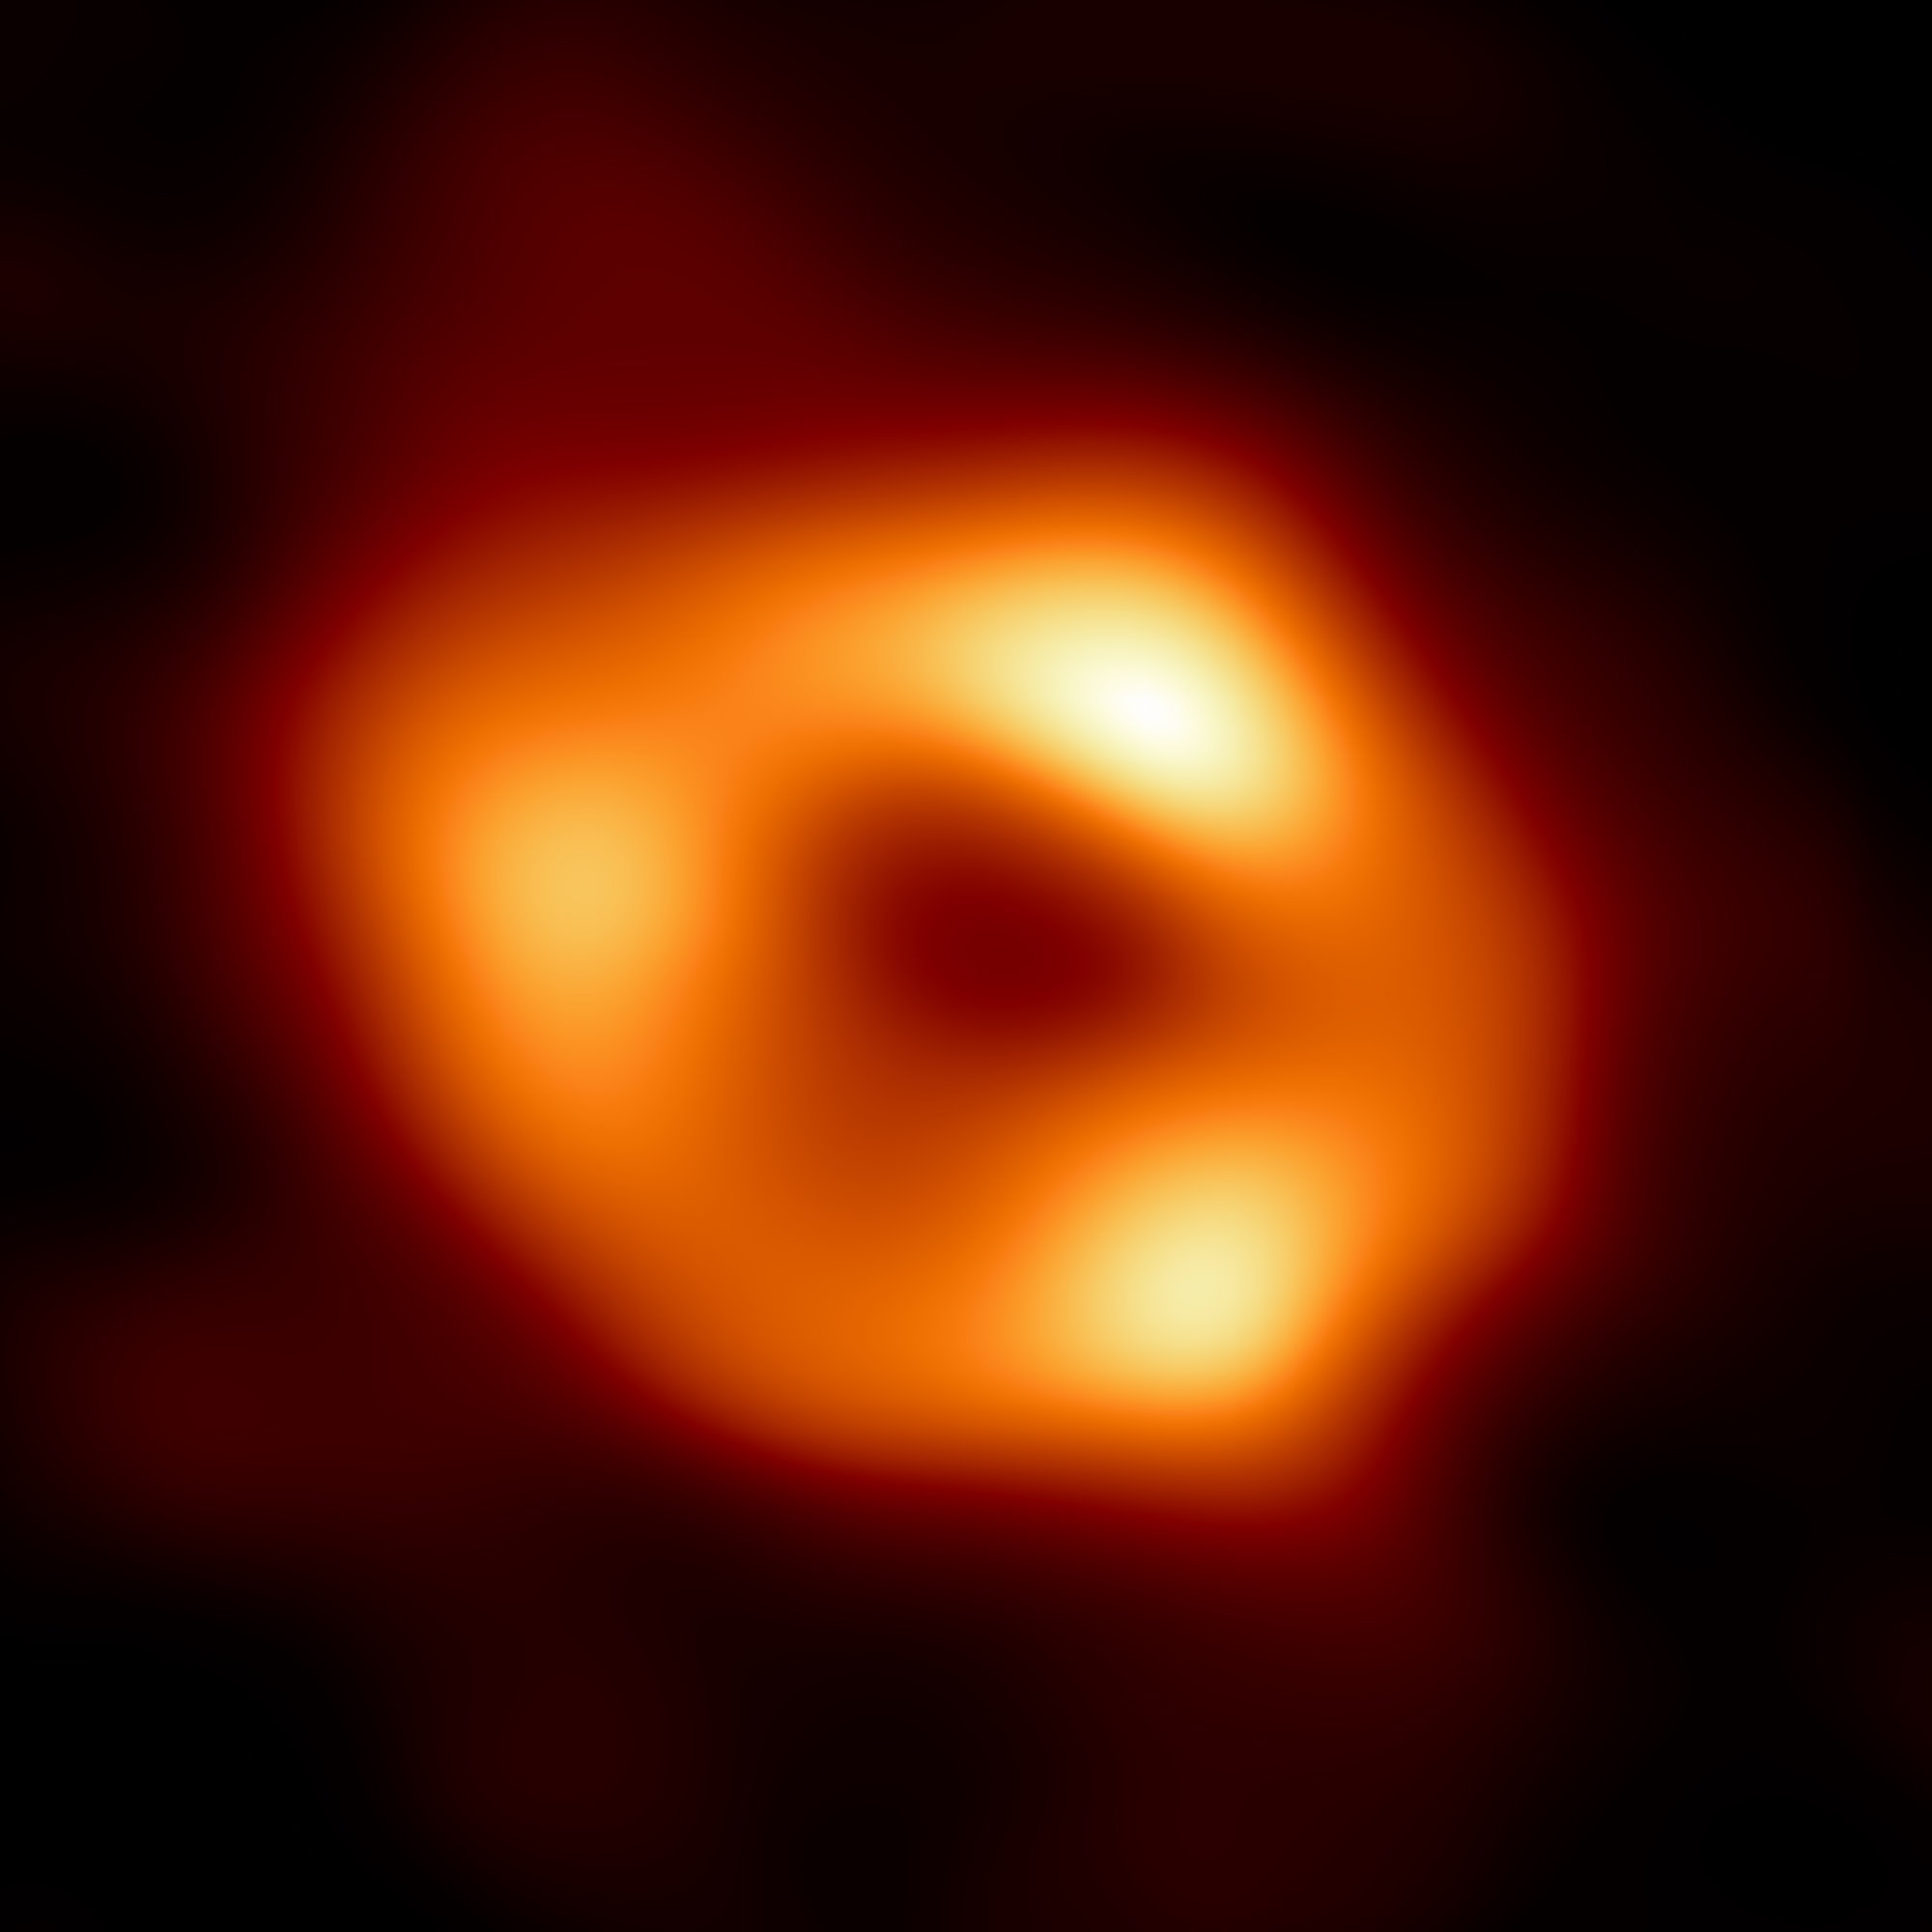 Sagittarius A - czarna dziura w centrum Drogi Mlecznej